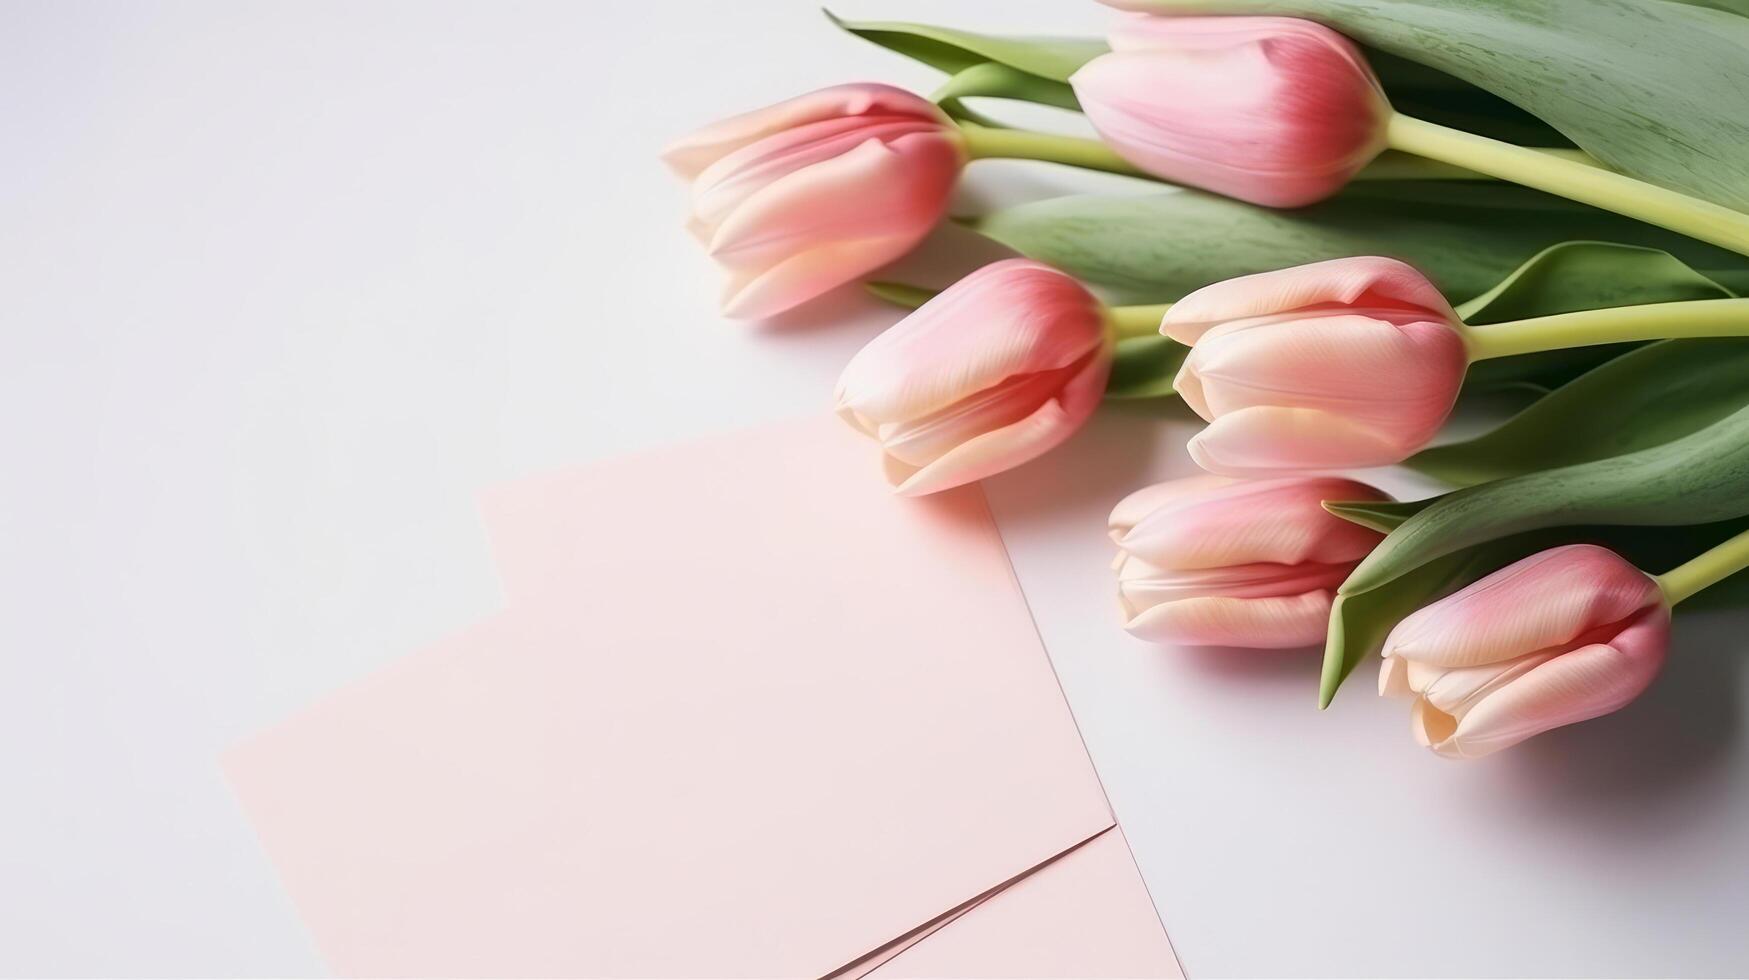 Pink tulips background. Illustration photo